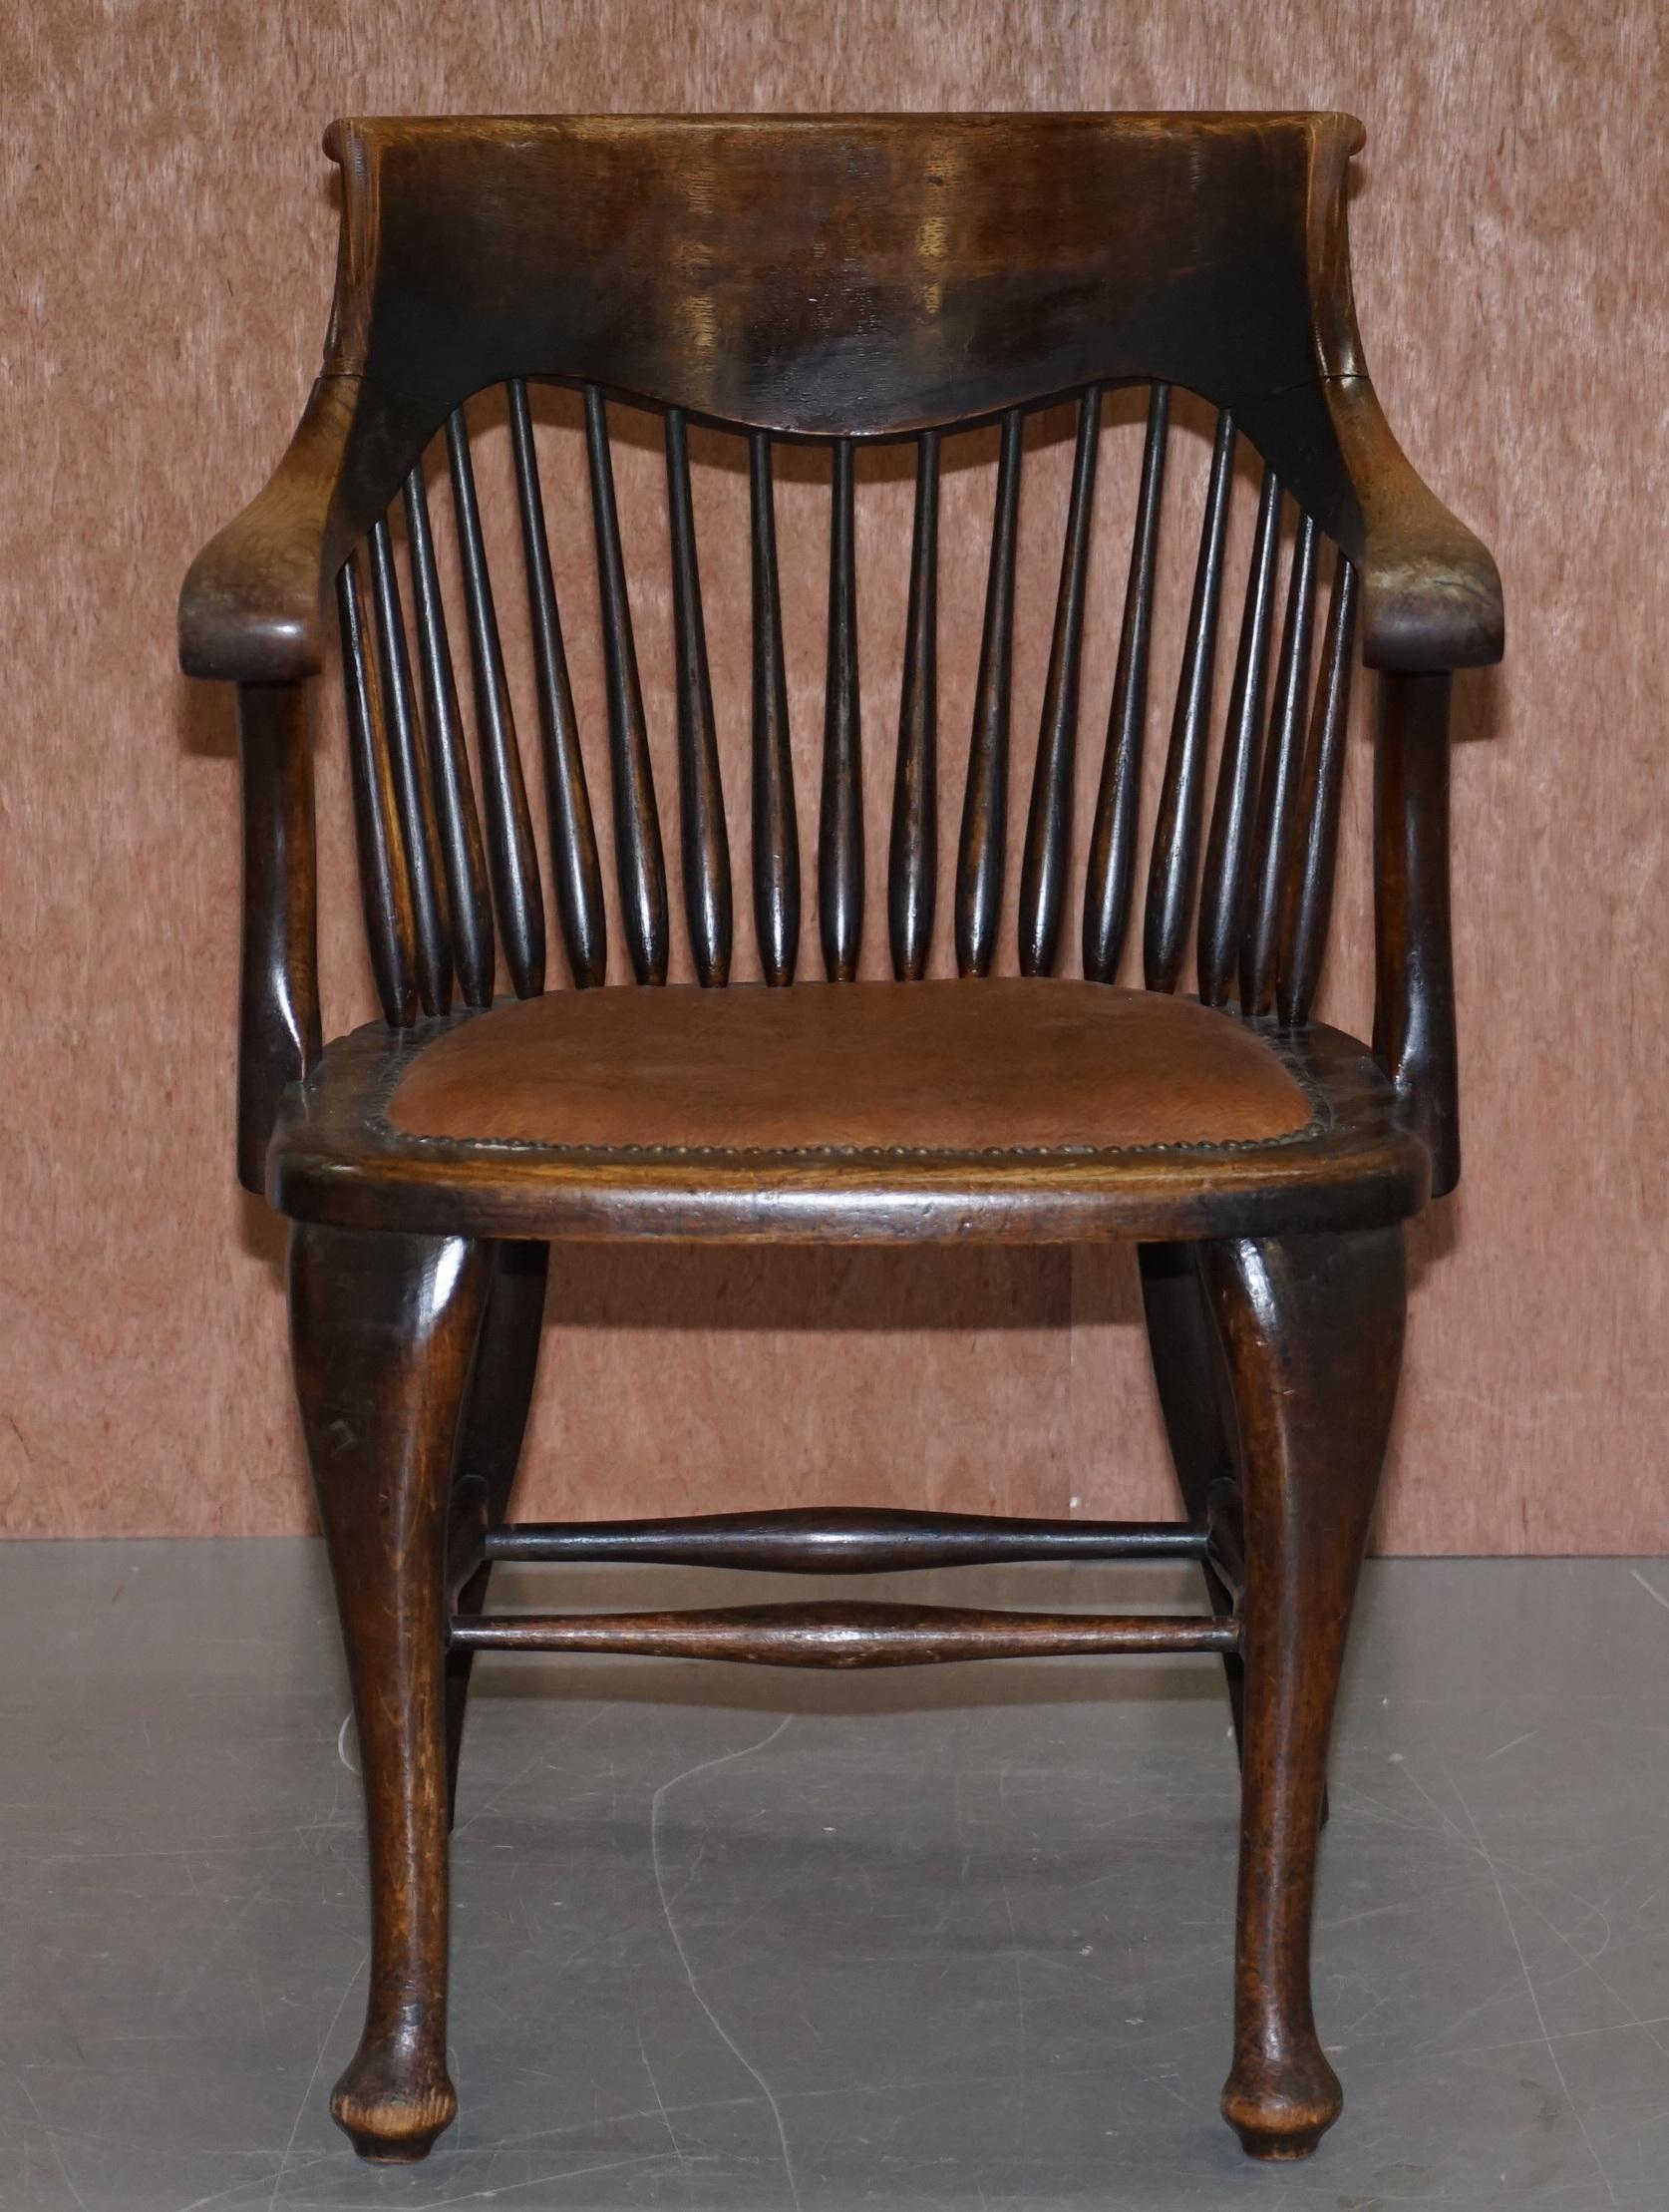 Nous avons le plaisir de proposer à la vente cette belle chaise de capitaine Edouardienne anglaise en chêne estampillée Ralph Johnson

J'ai deux de ces chaises, toutes deux identiques à l'exception de la couleur de la base du siège en cuir,